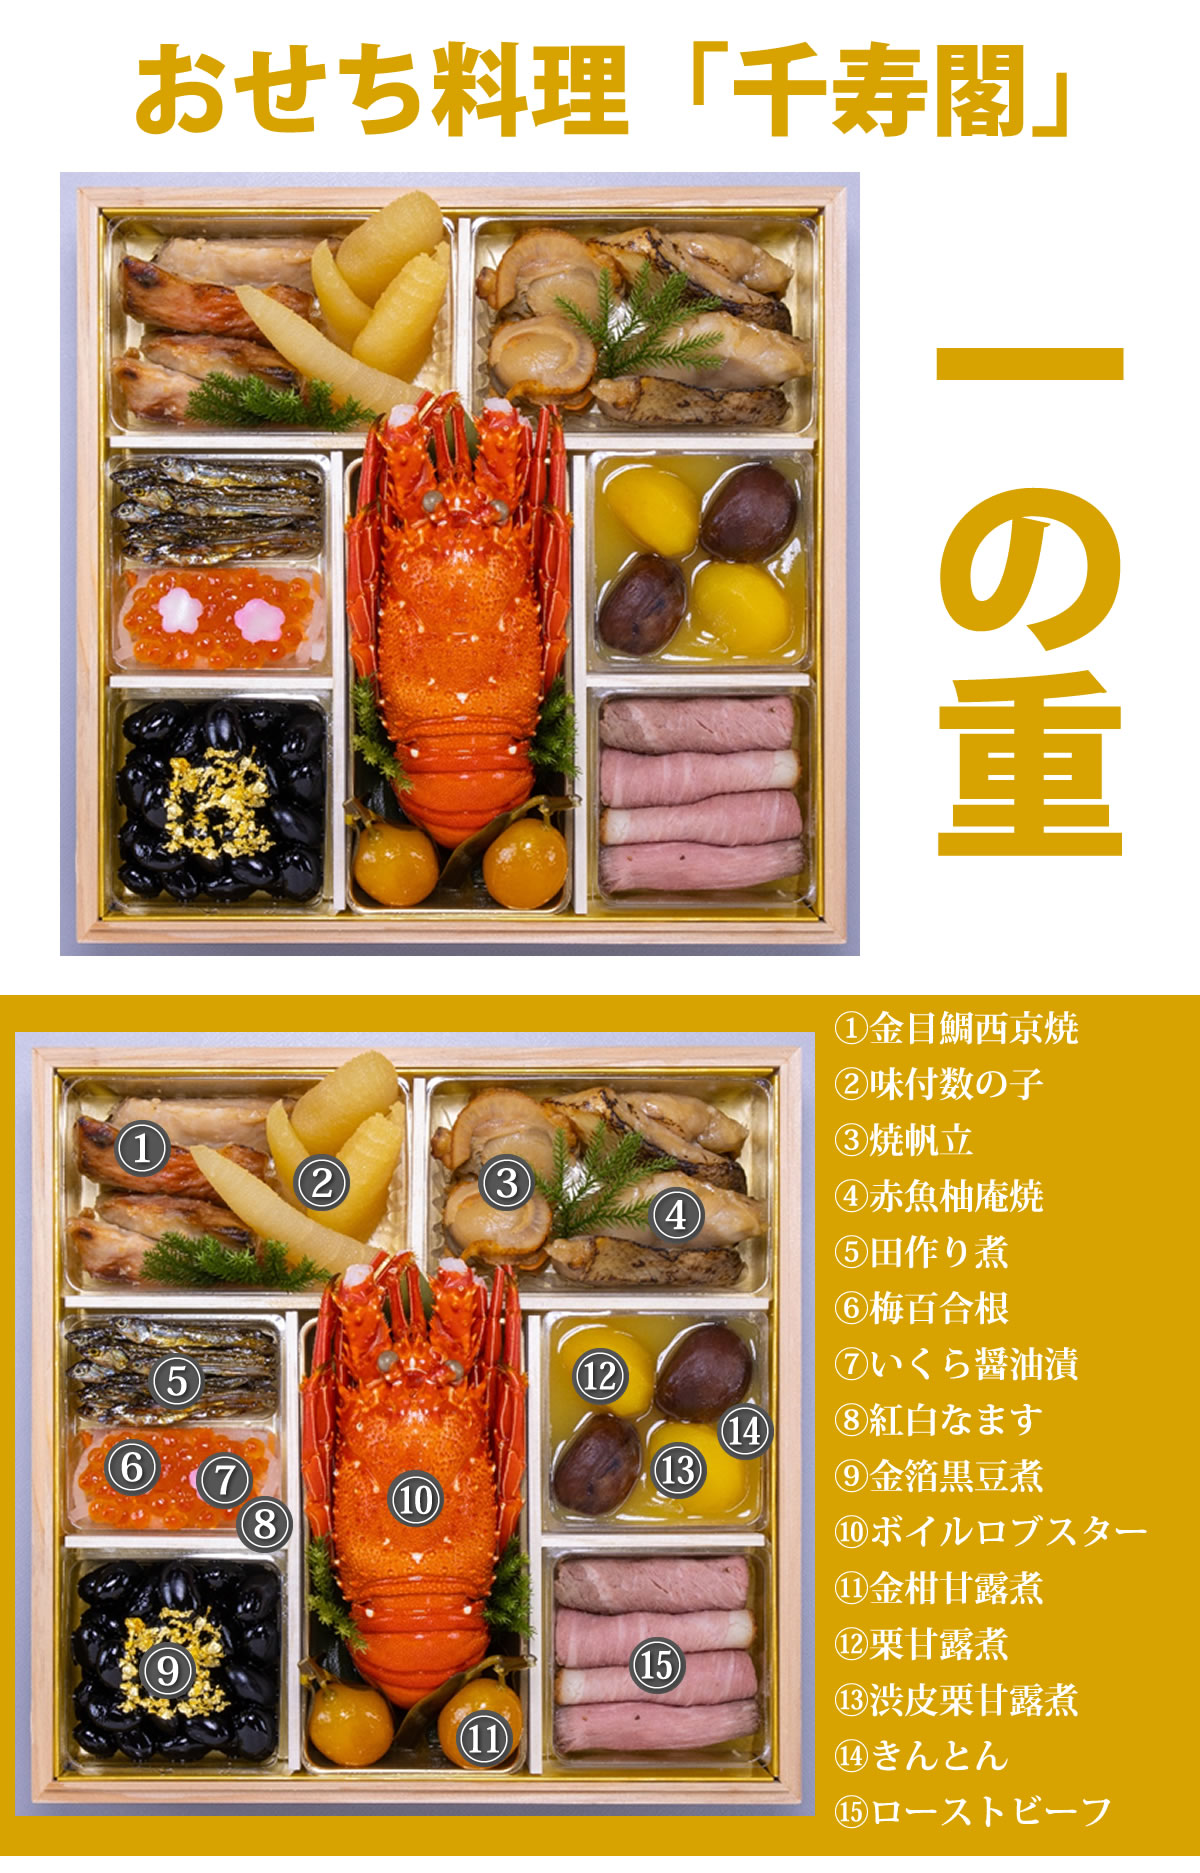 京都しょうざん和風おせち料理「千寿閣」与段重 6.5寸 4人前 5人前 68品入 和風 洋風 中華 数量限定